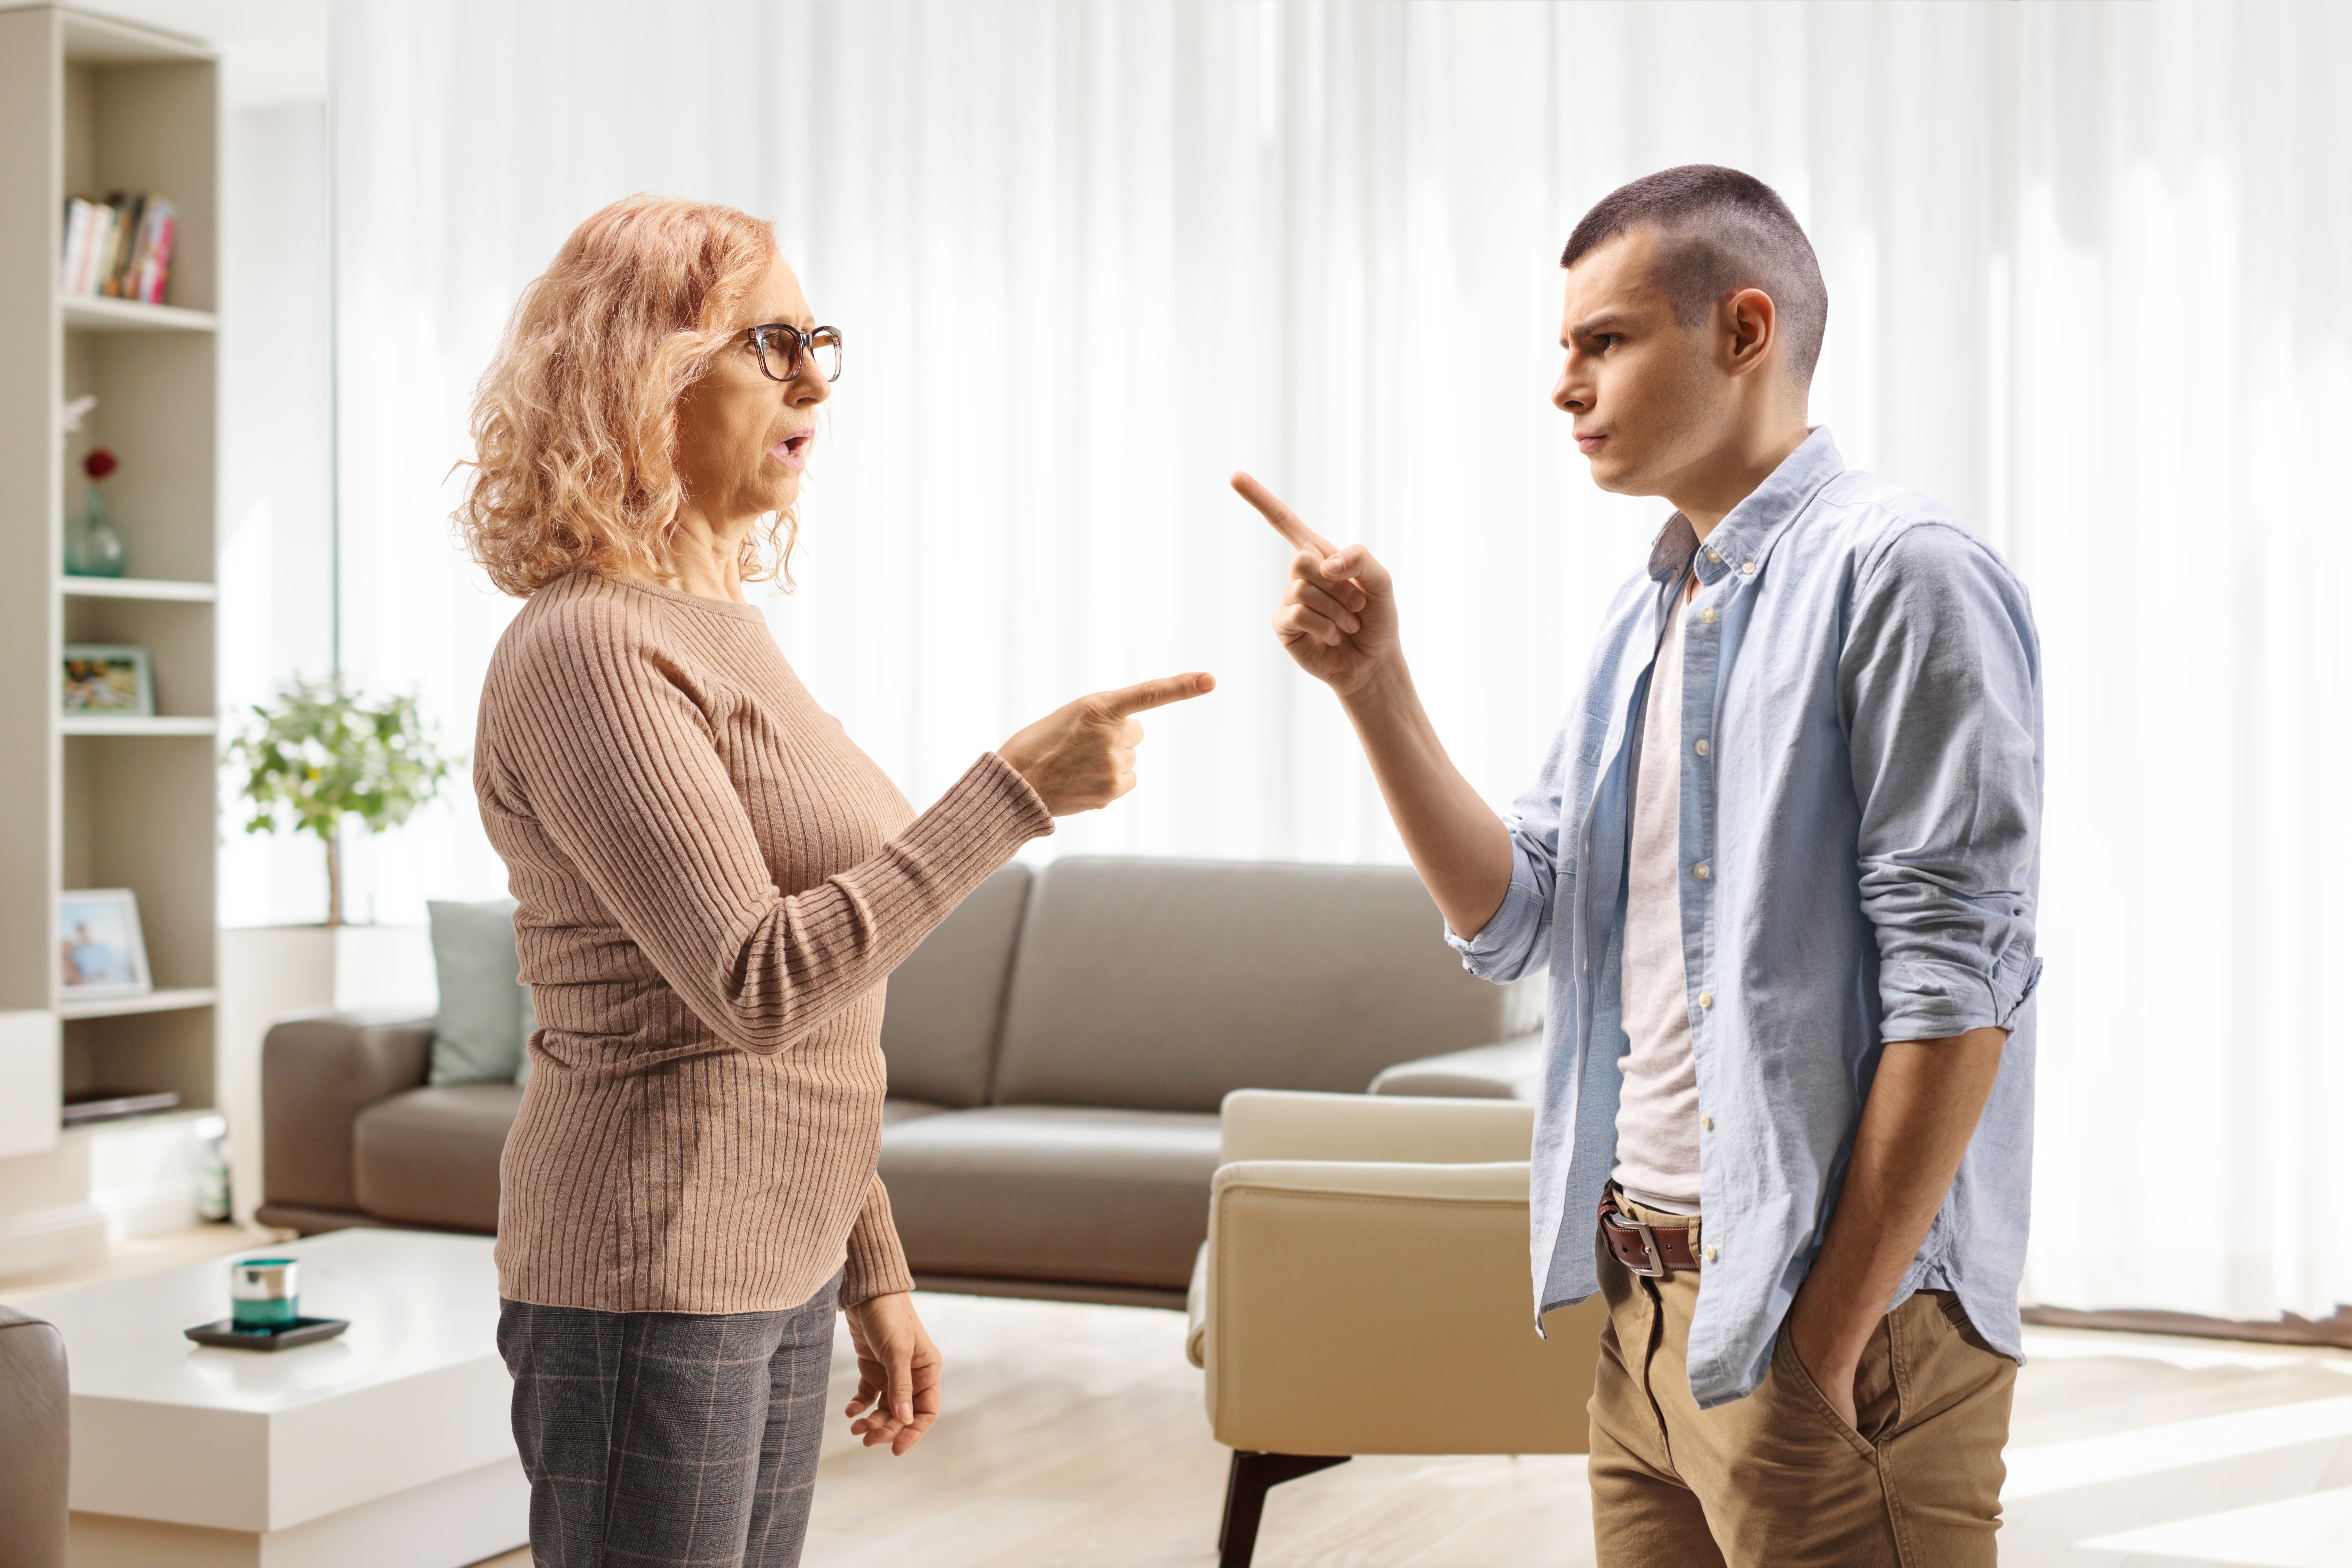 Une mère se disputant avec son fils à la maison | Source : Shutterstock